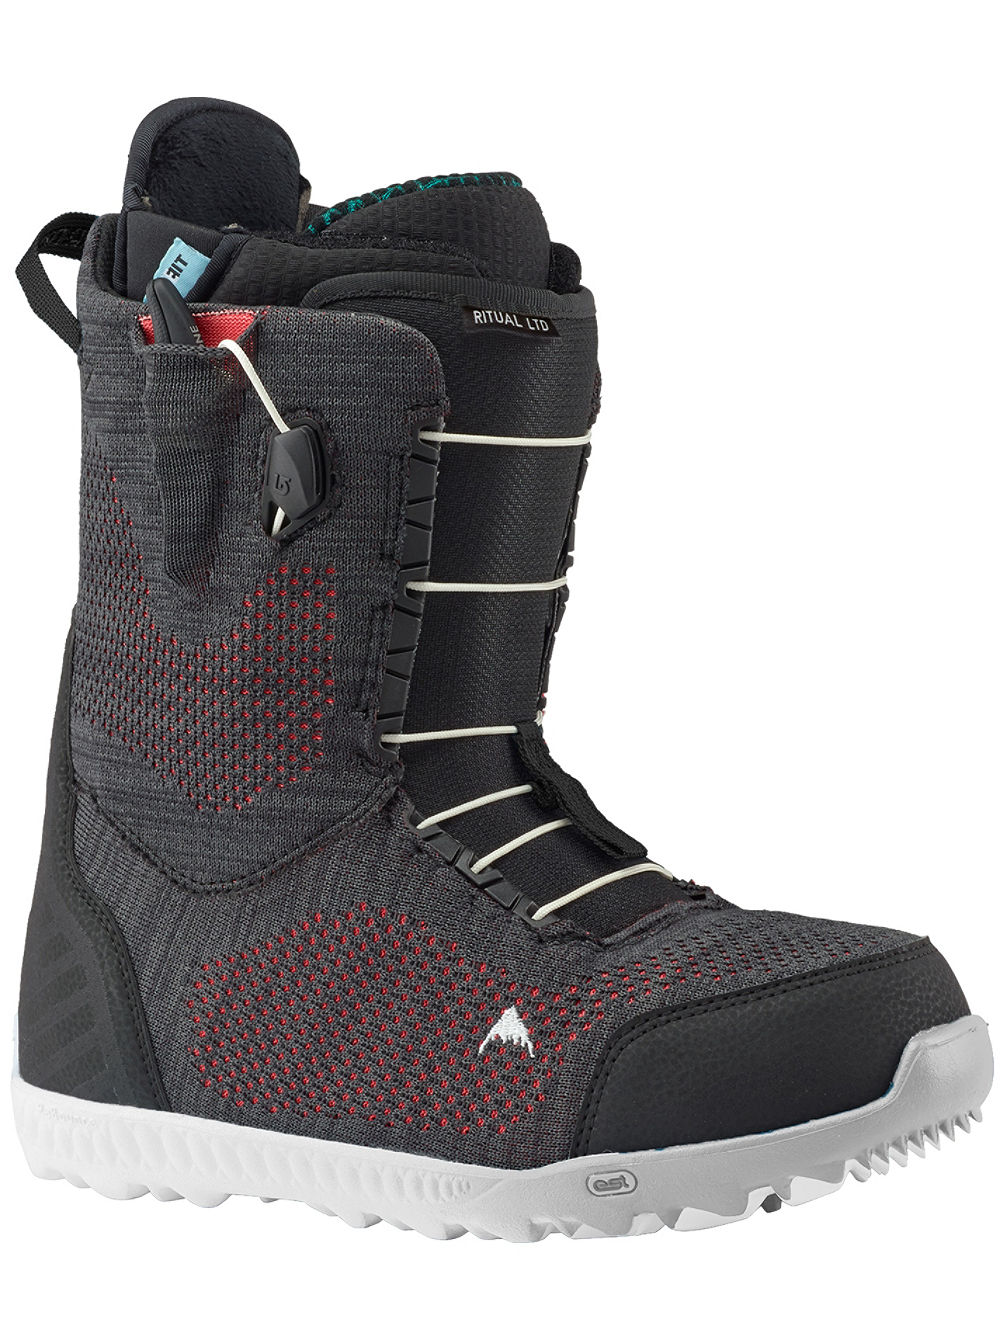 Ritual Ltd Boots de Snowboard